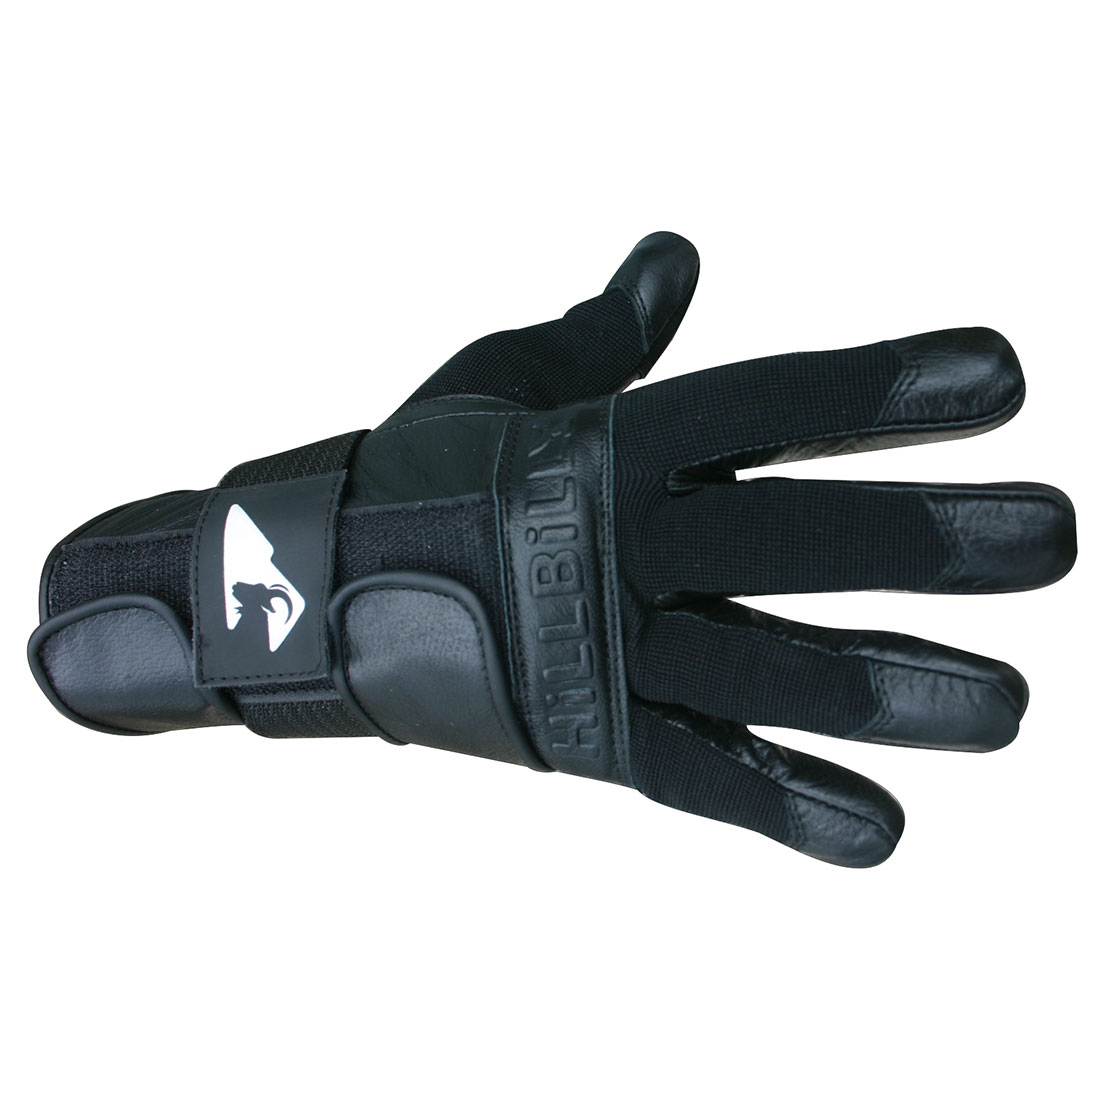 Hillbilly Wrist Guard Glove Full Finger Black